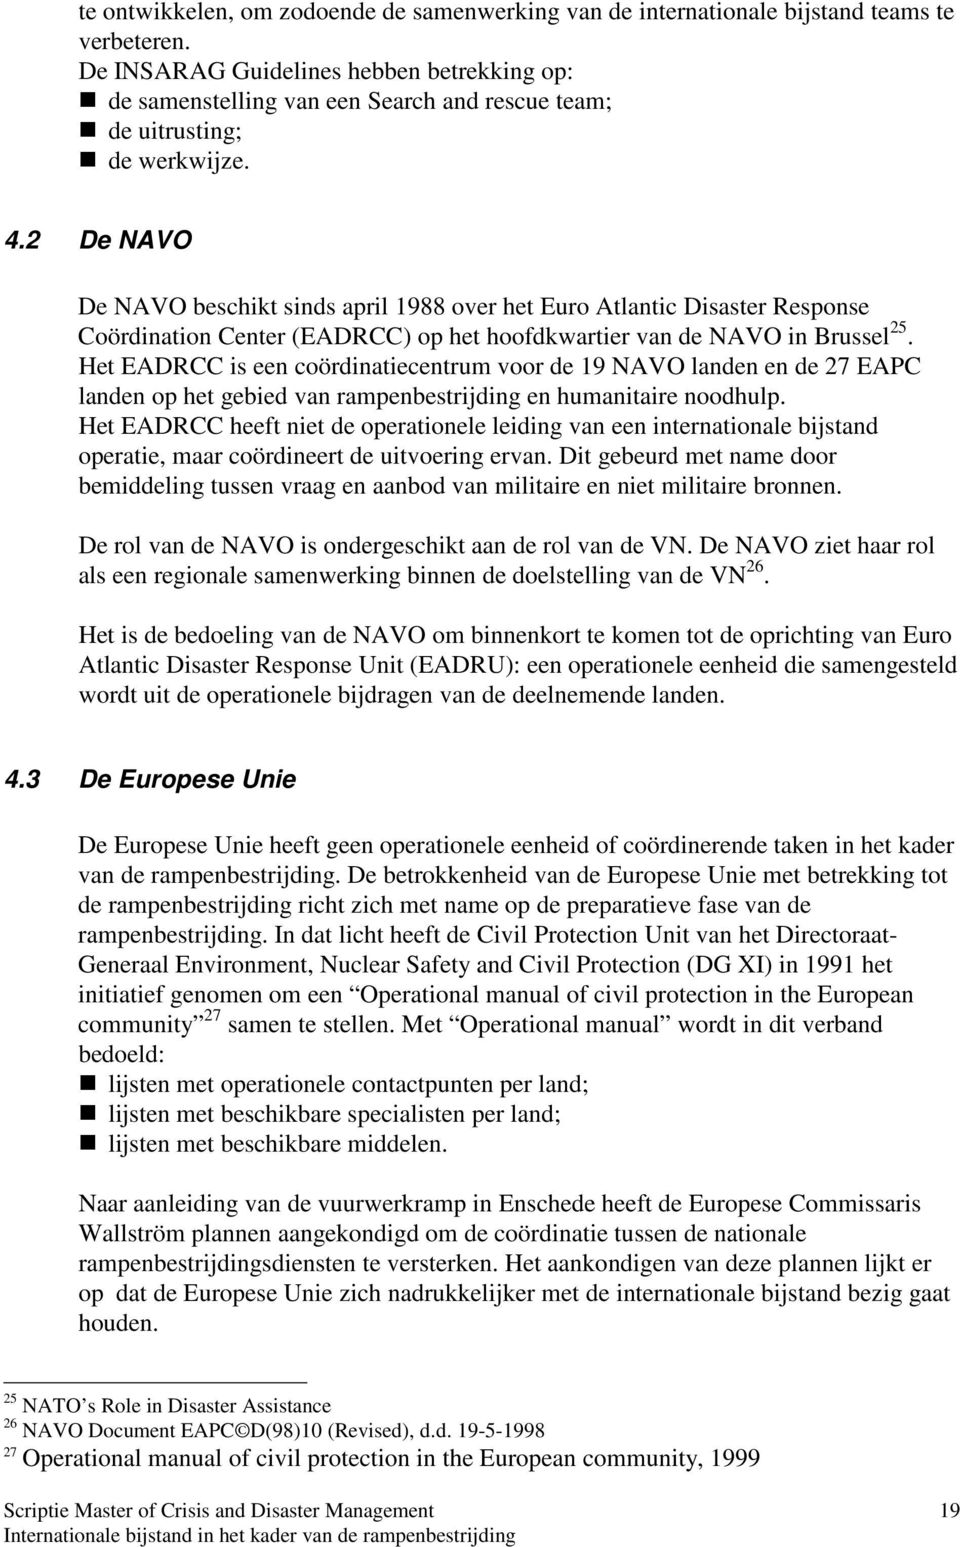 2 De NAVO De NAVO beschikt sinds april 1988 over het Euro Atlantic Disaster Response Coördination Center (EADRCC) op het hoofdkwartier van de NAVO in Brussel 25.